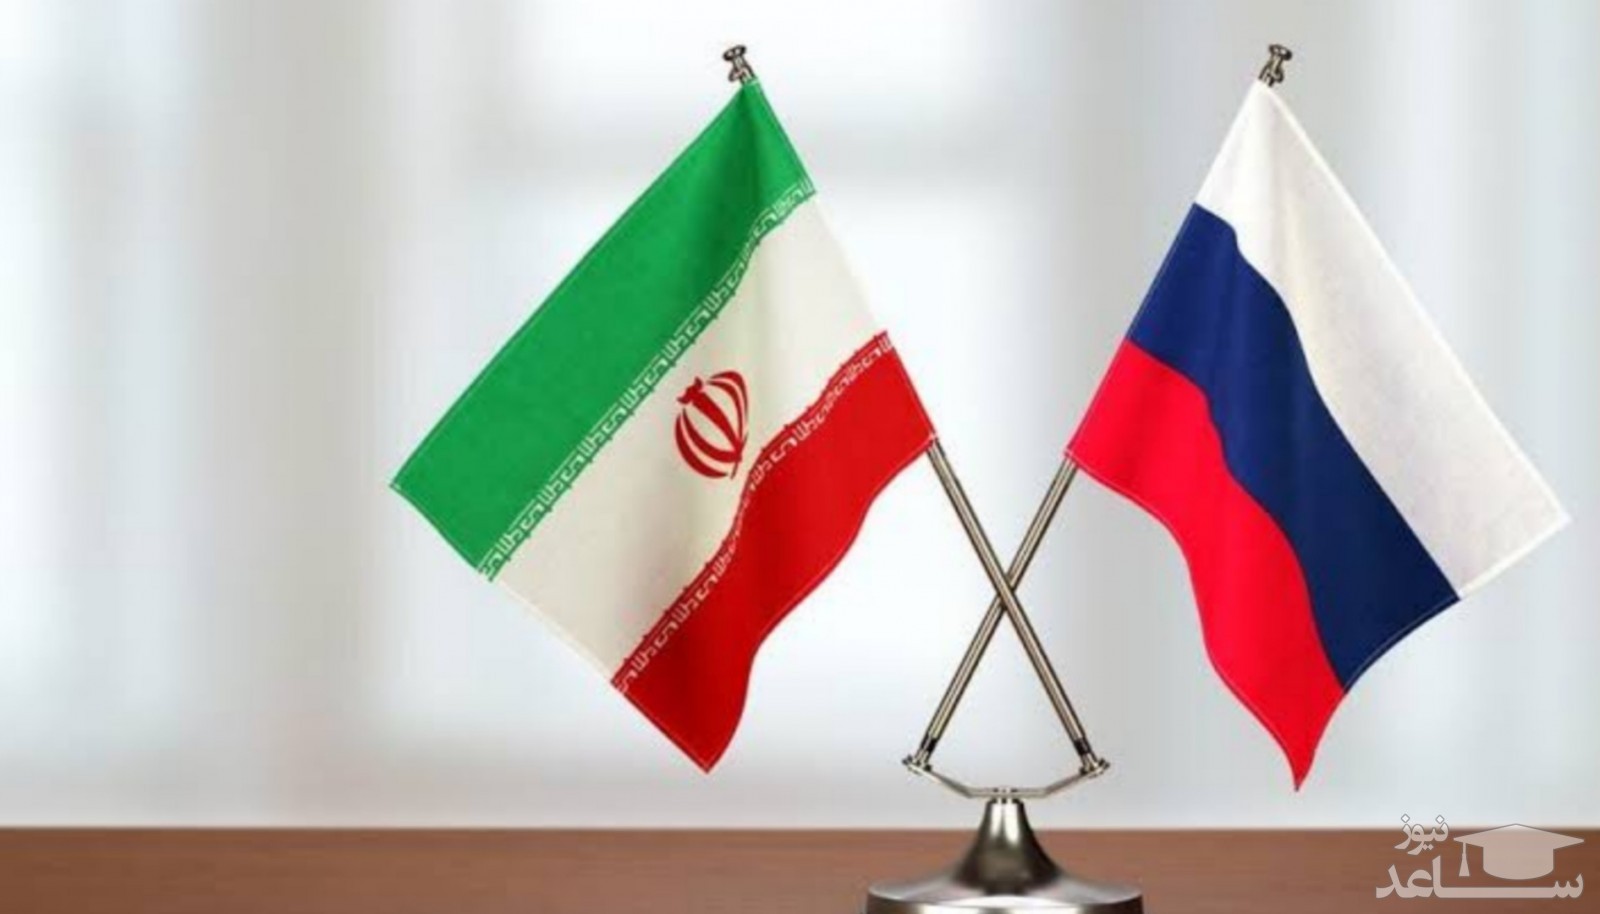 نقشه نظامی ایران و روسیه برای مقابله با امریکا + جزئیات